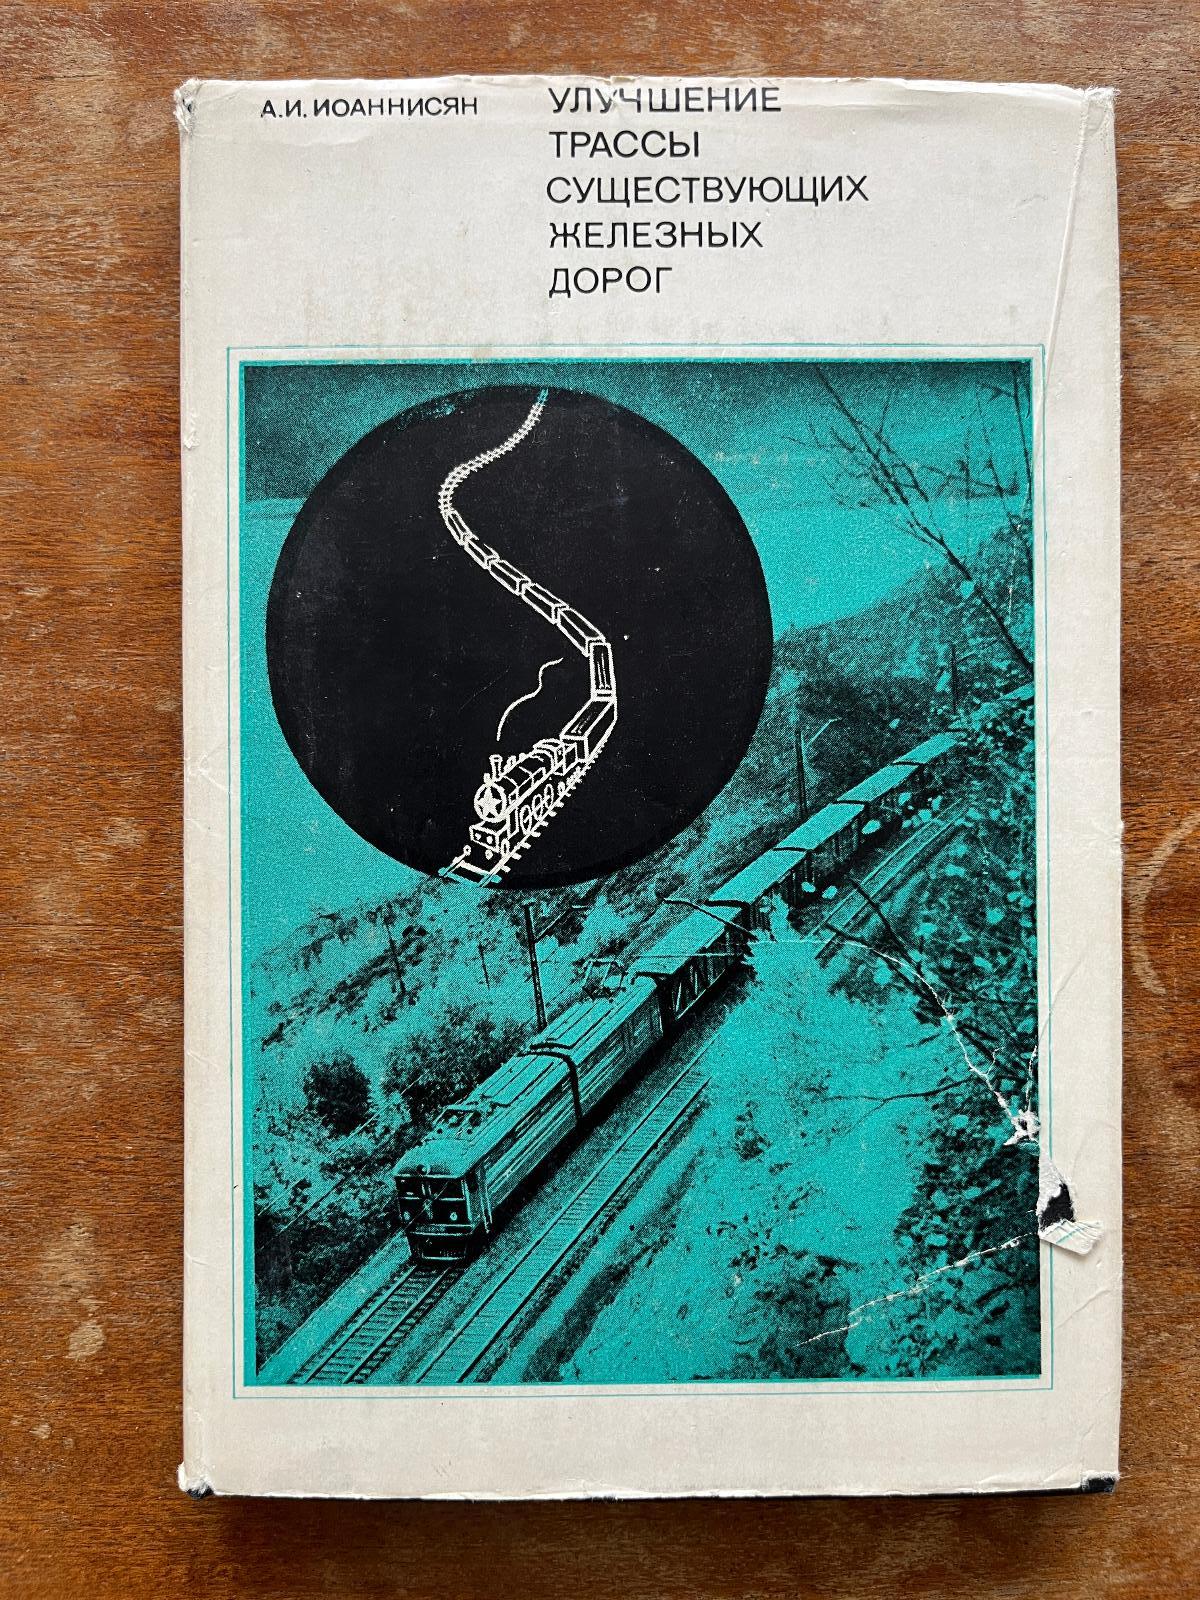 Cudzojazyčná železničná literatúra (1972) (k) - Knihy